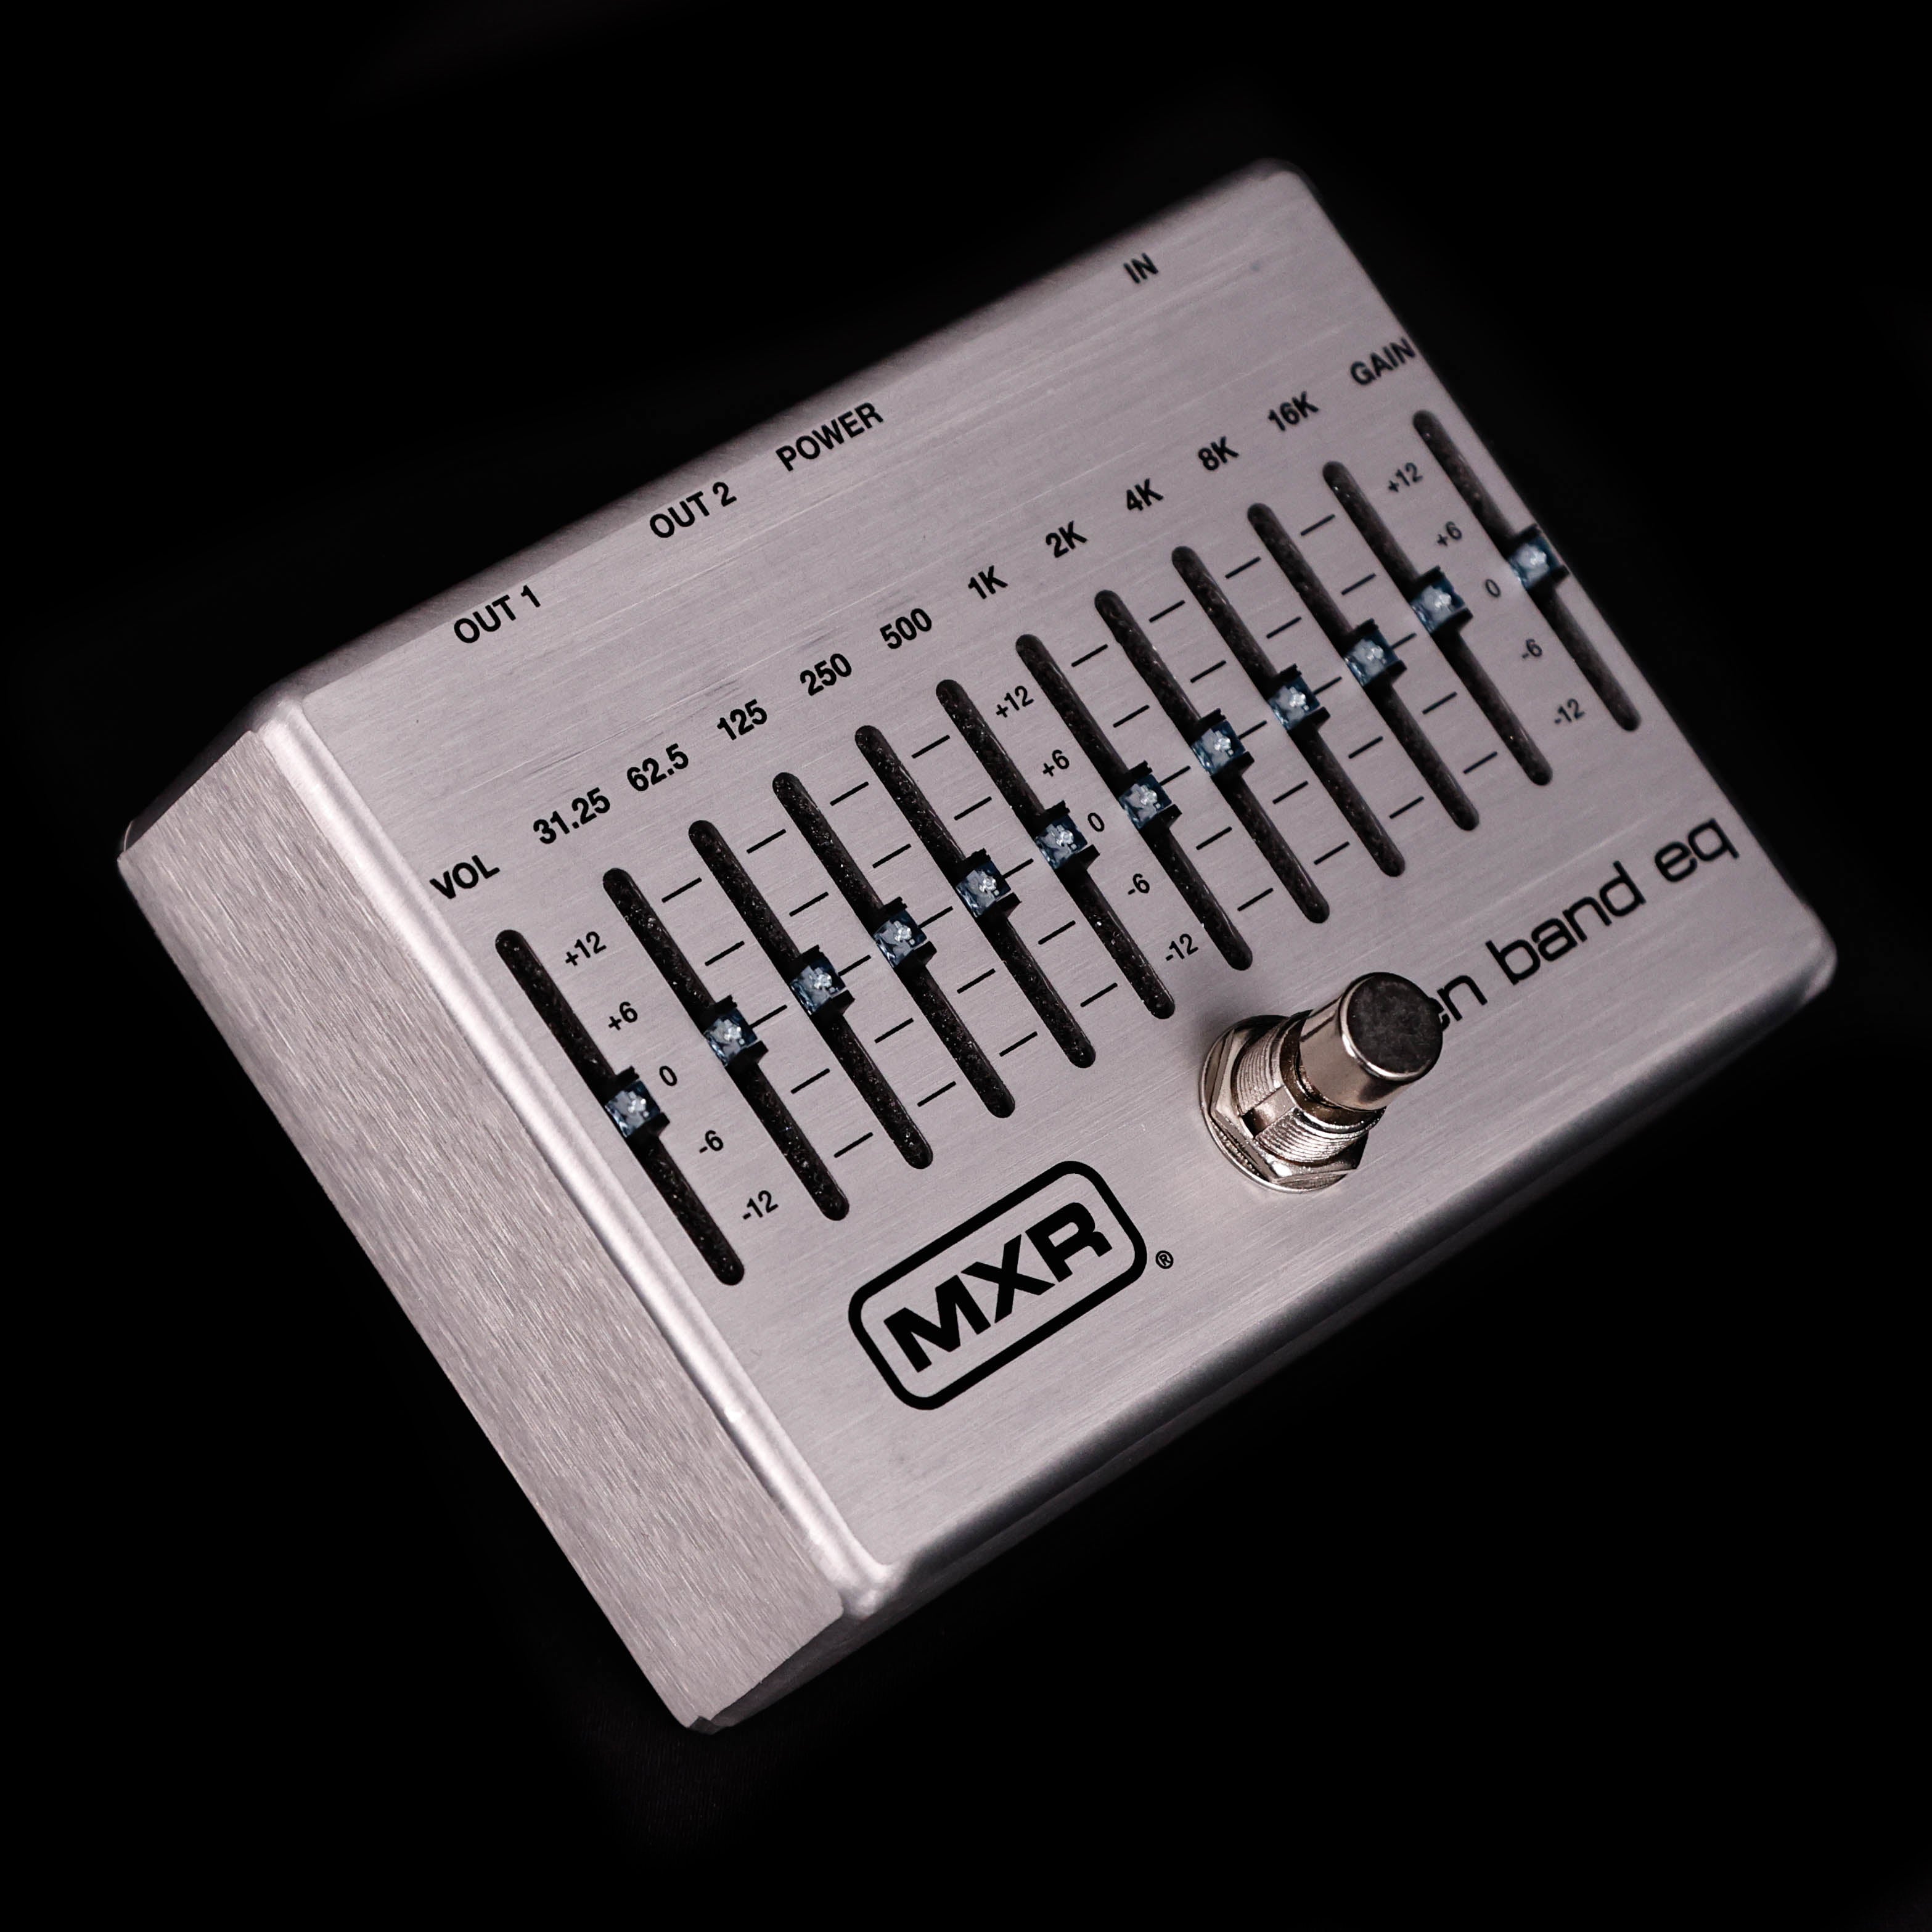 Dunlop M108S MXR 10 Band GEQ